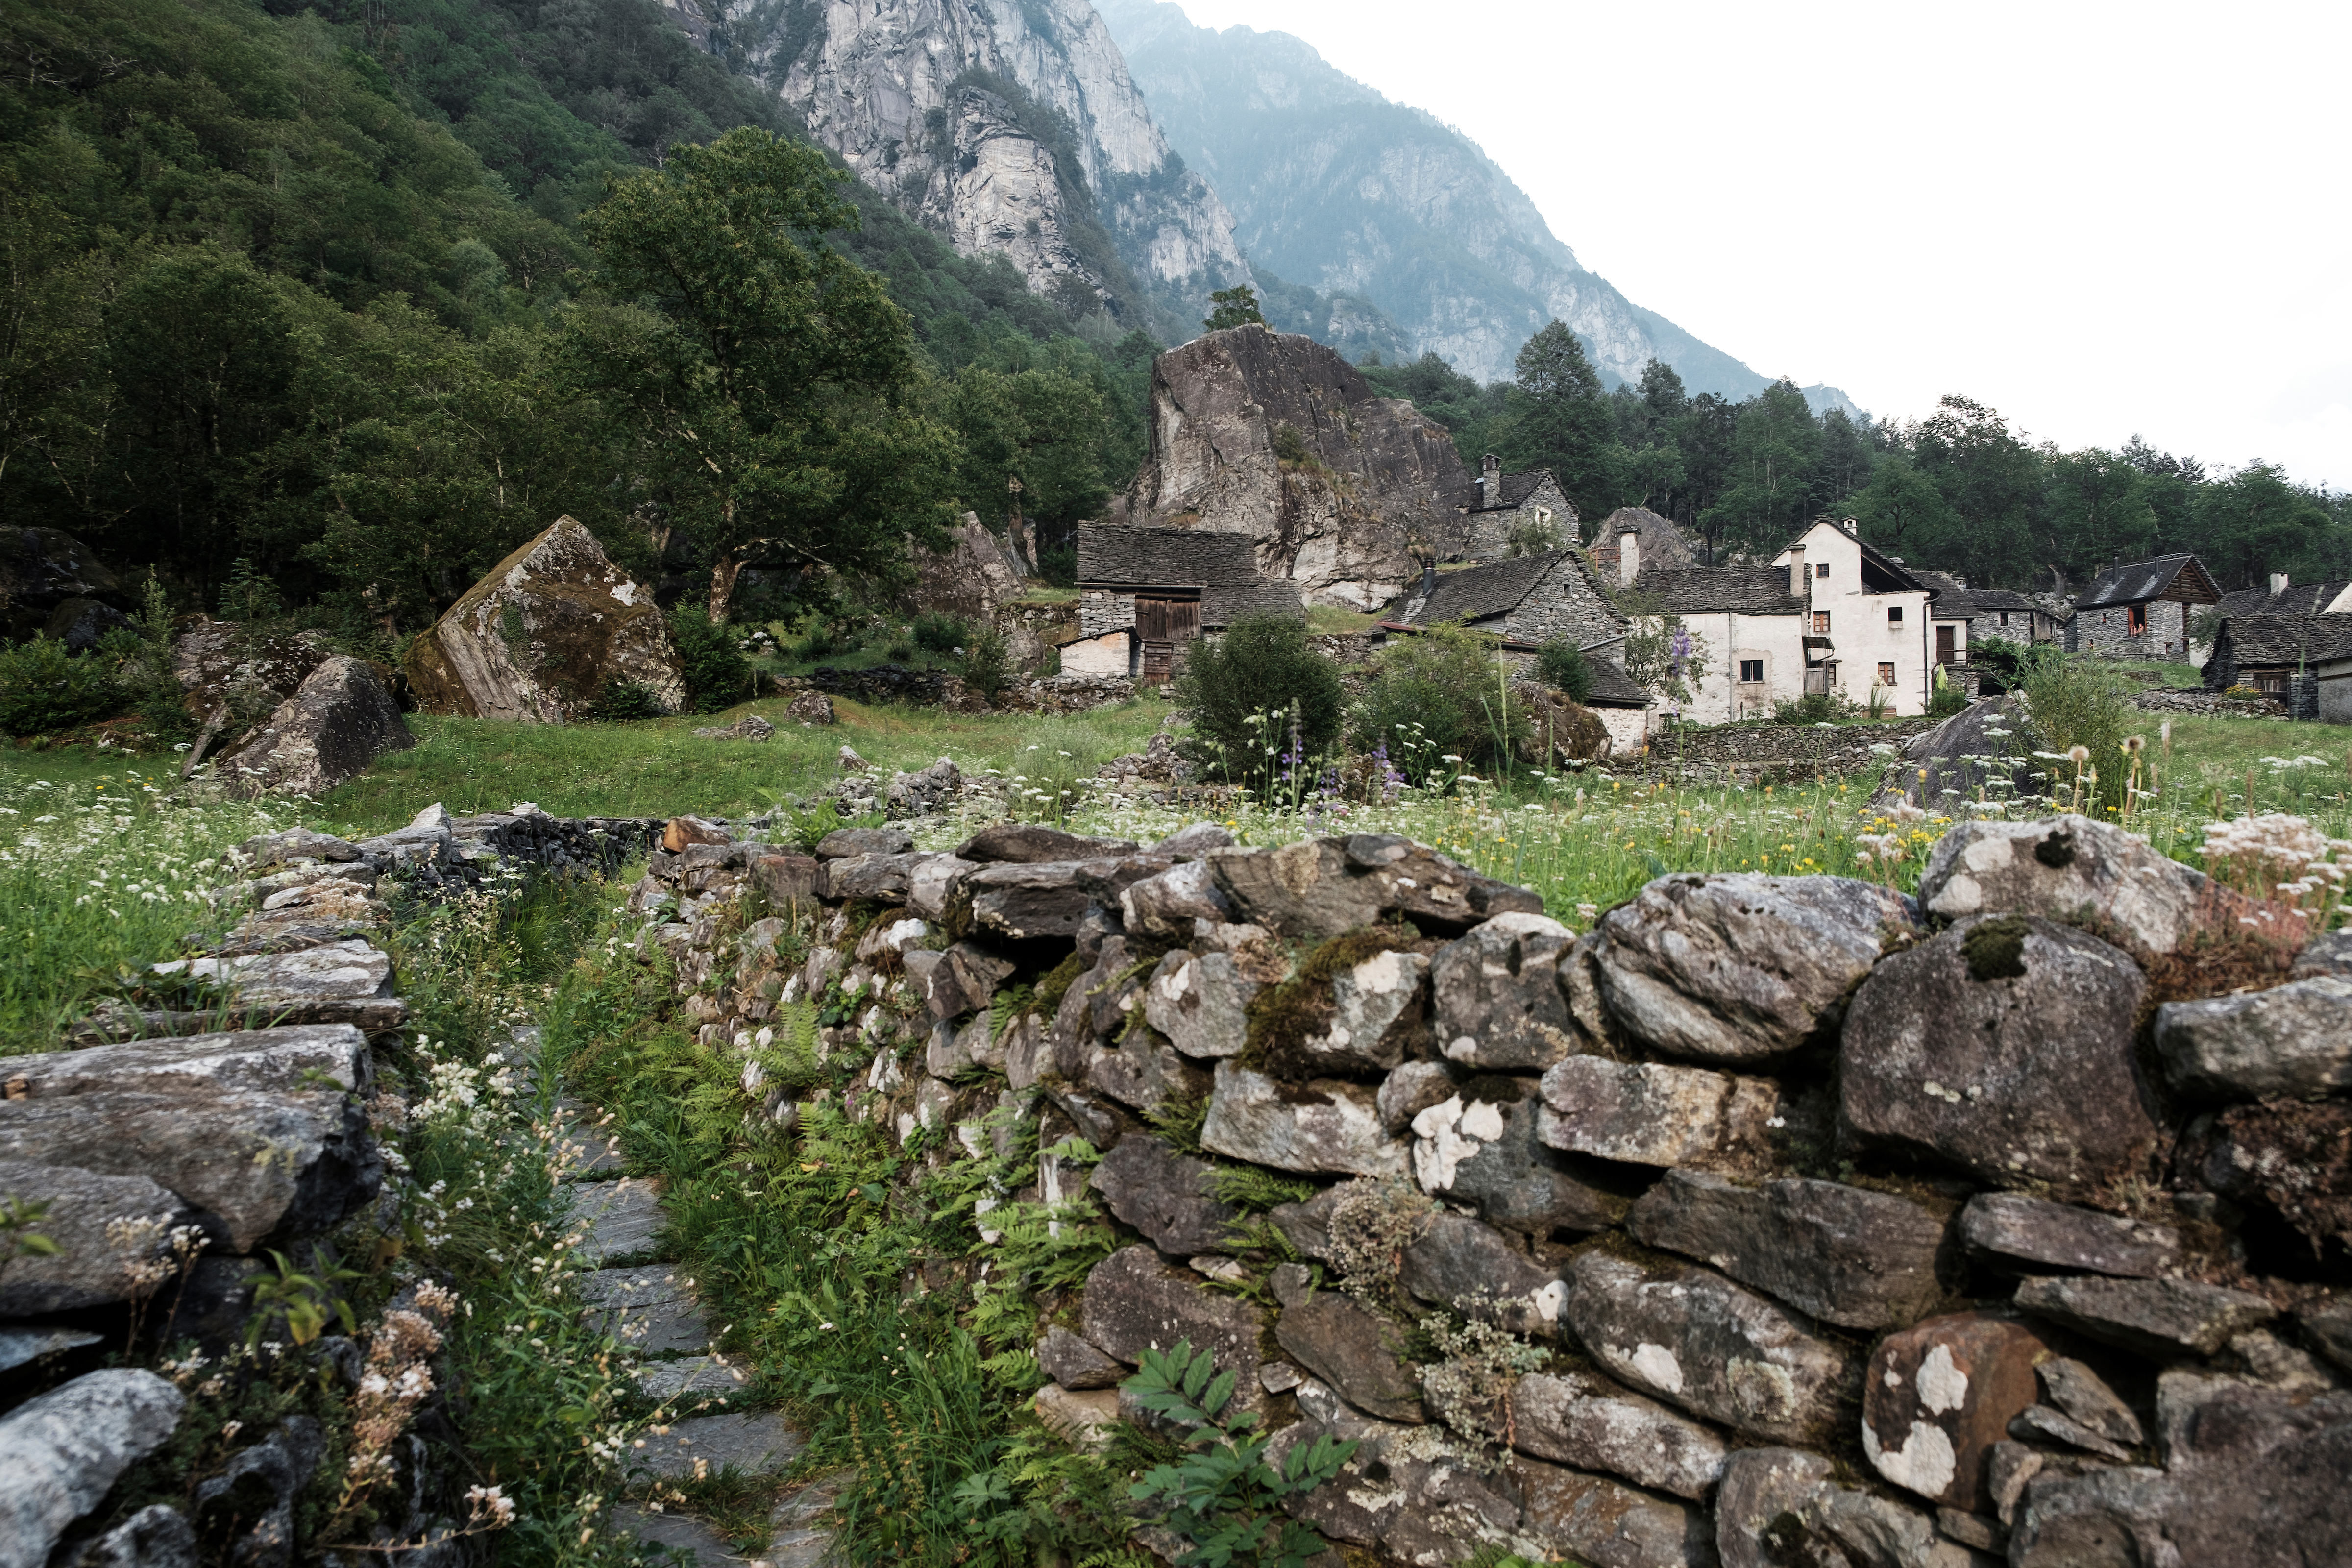 Le village de Sabbione, dans le Val Bavona. © Claudio Bader